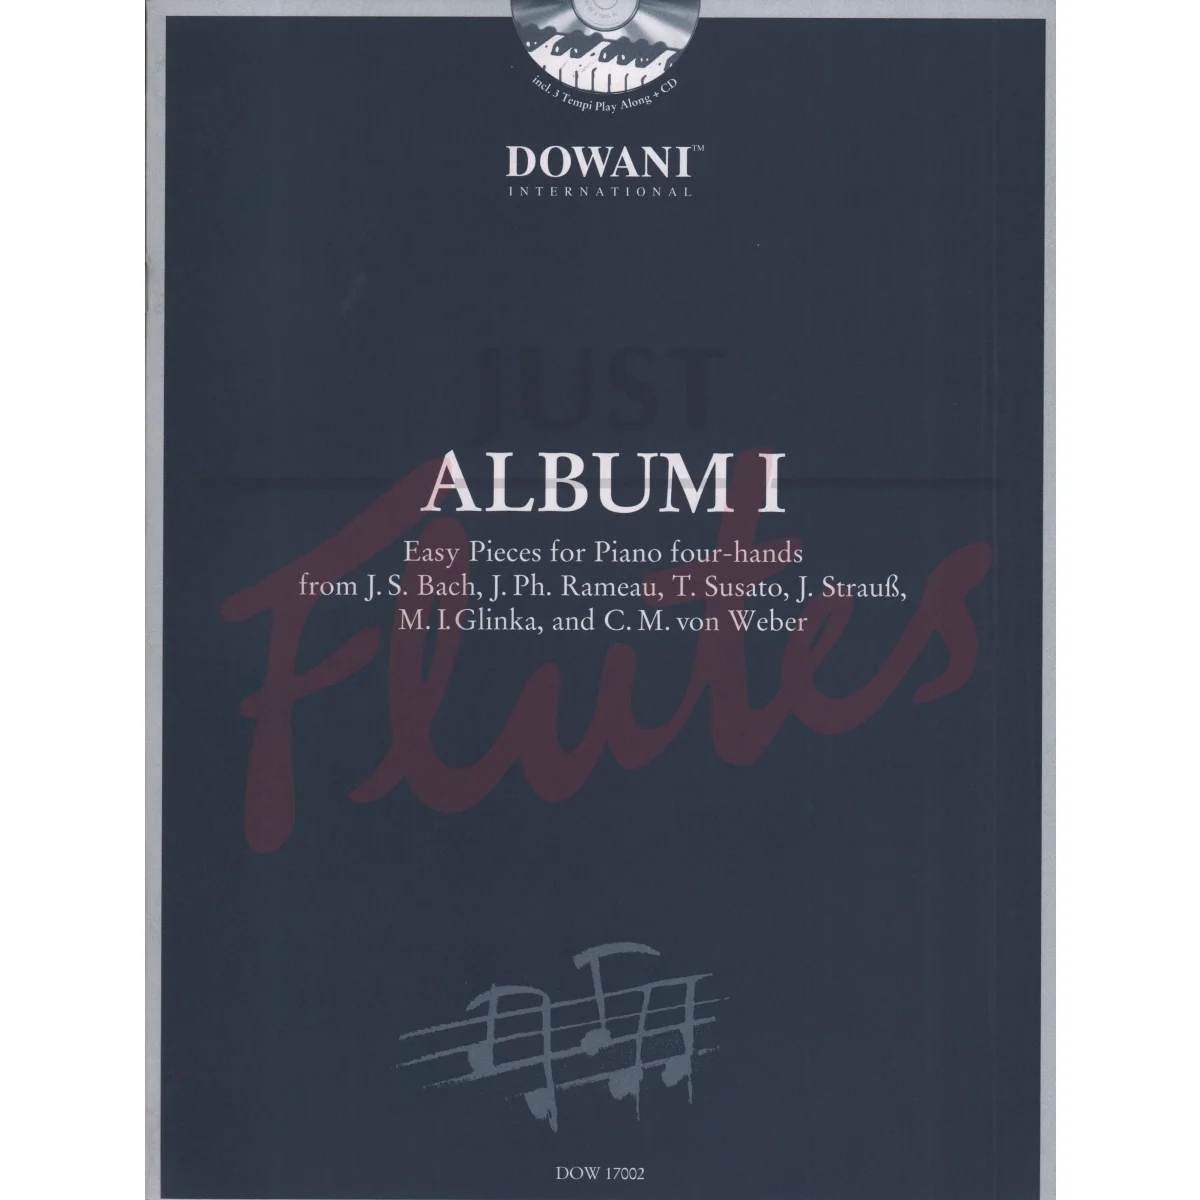 Album I: Easy Pieces for Piano four-hands